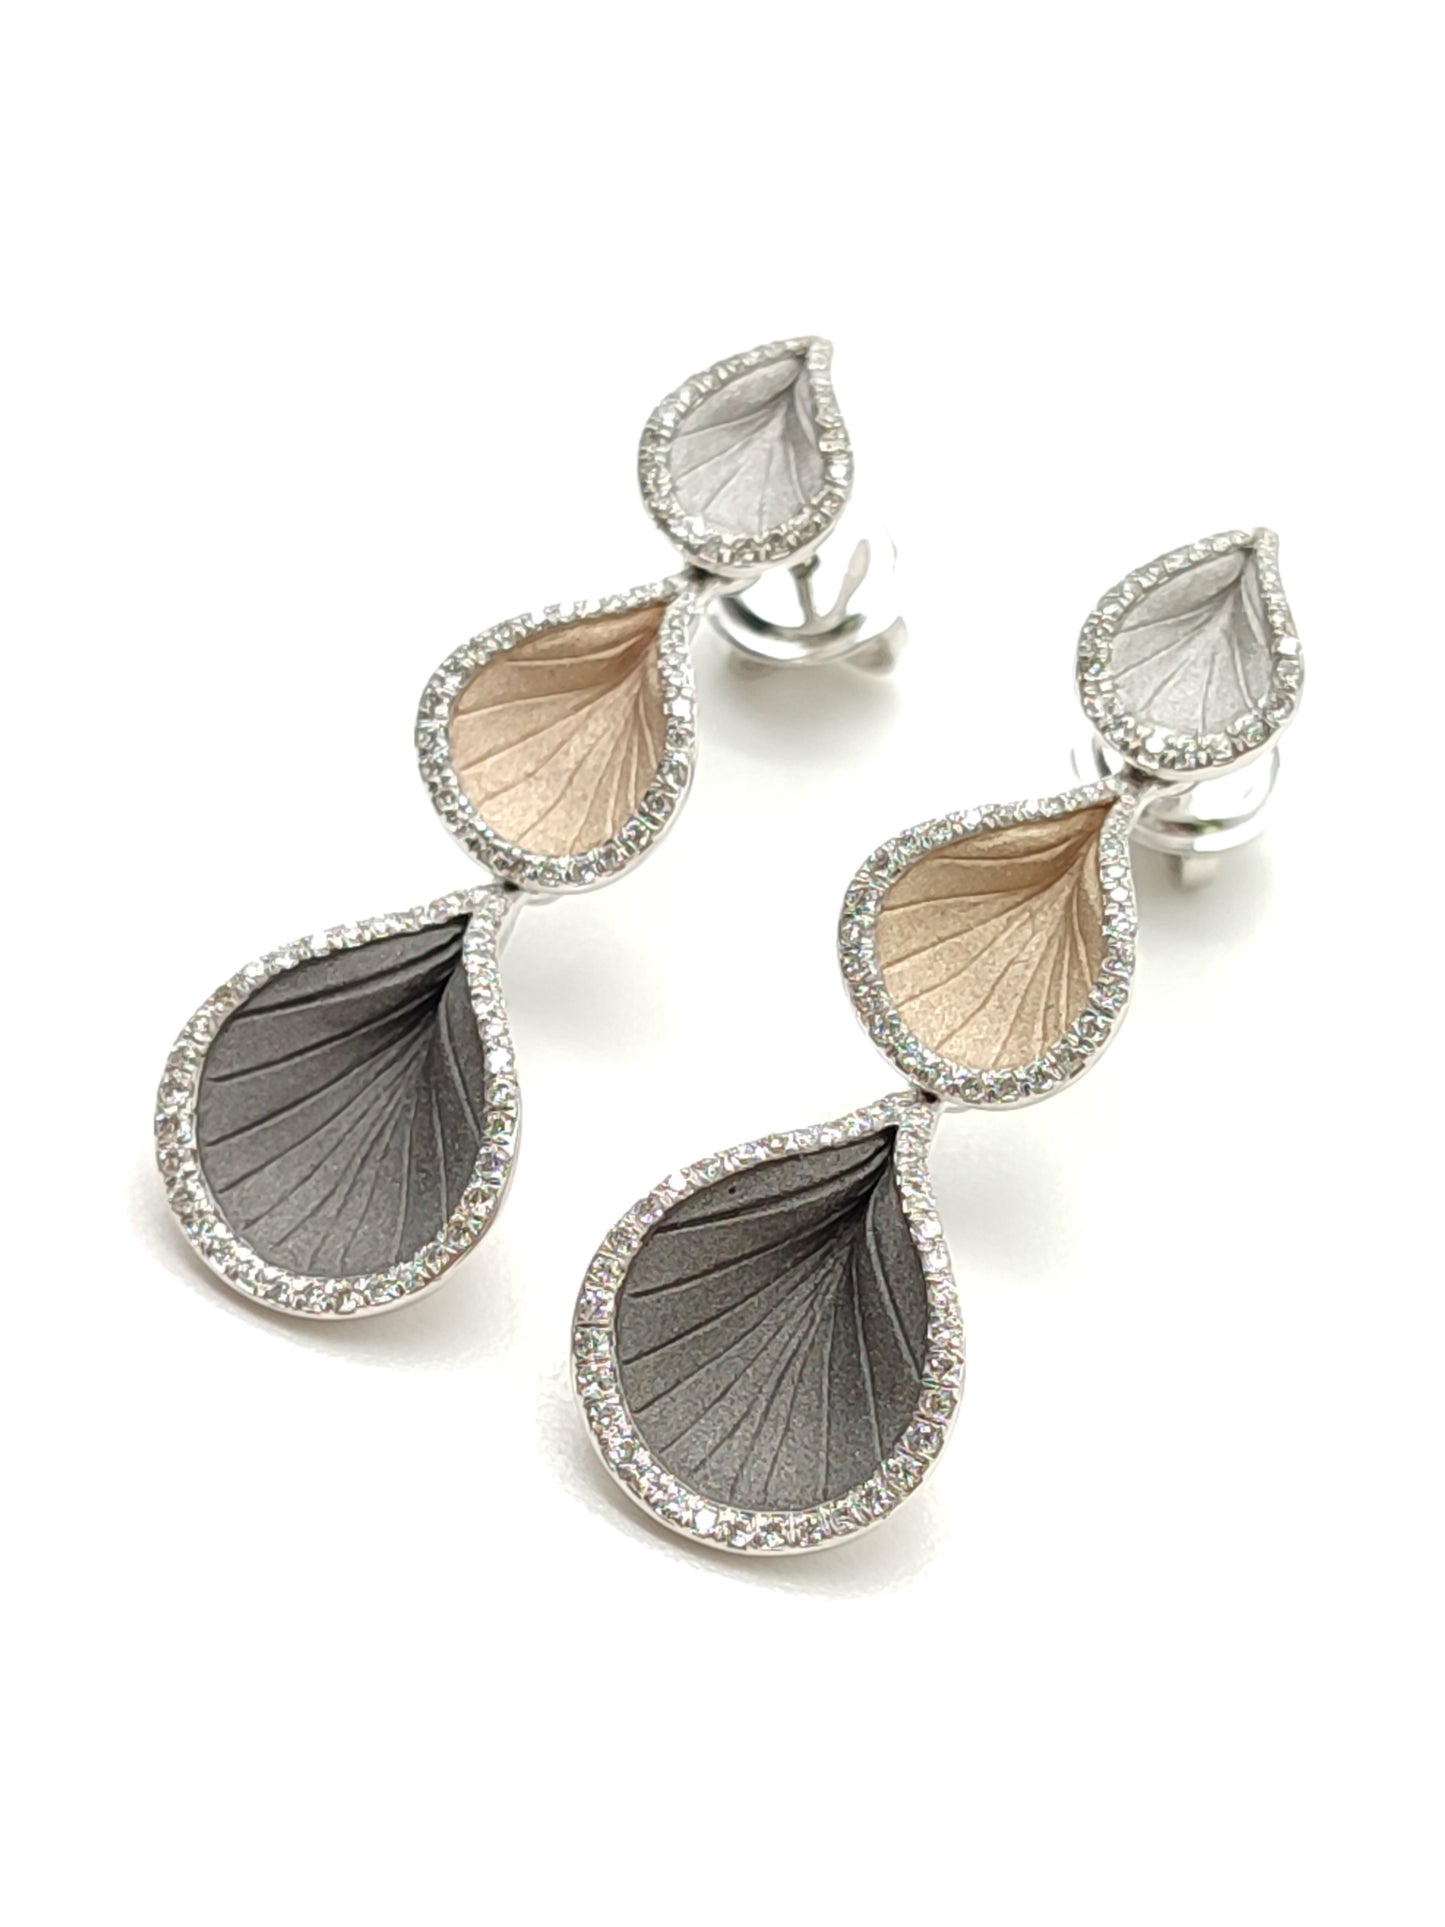 Goccia earrings in gold with Cammilli diamonds